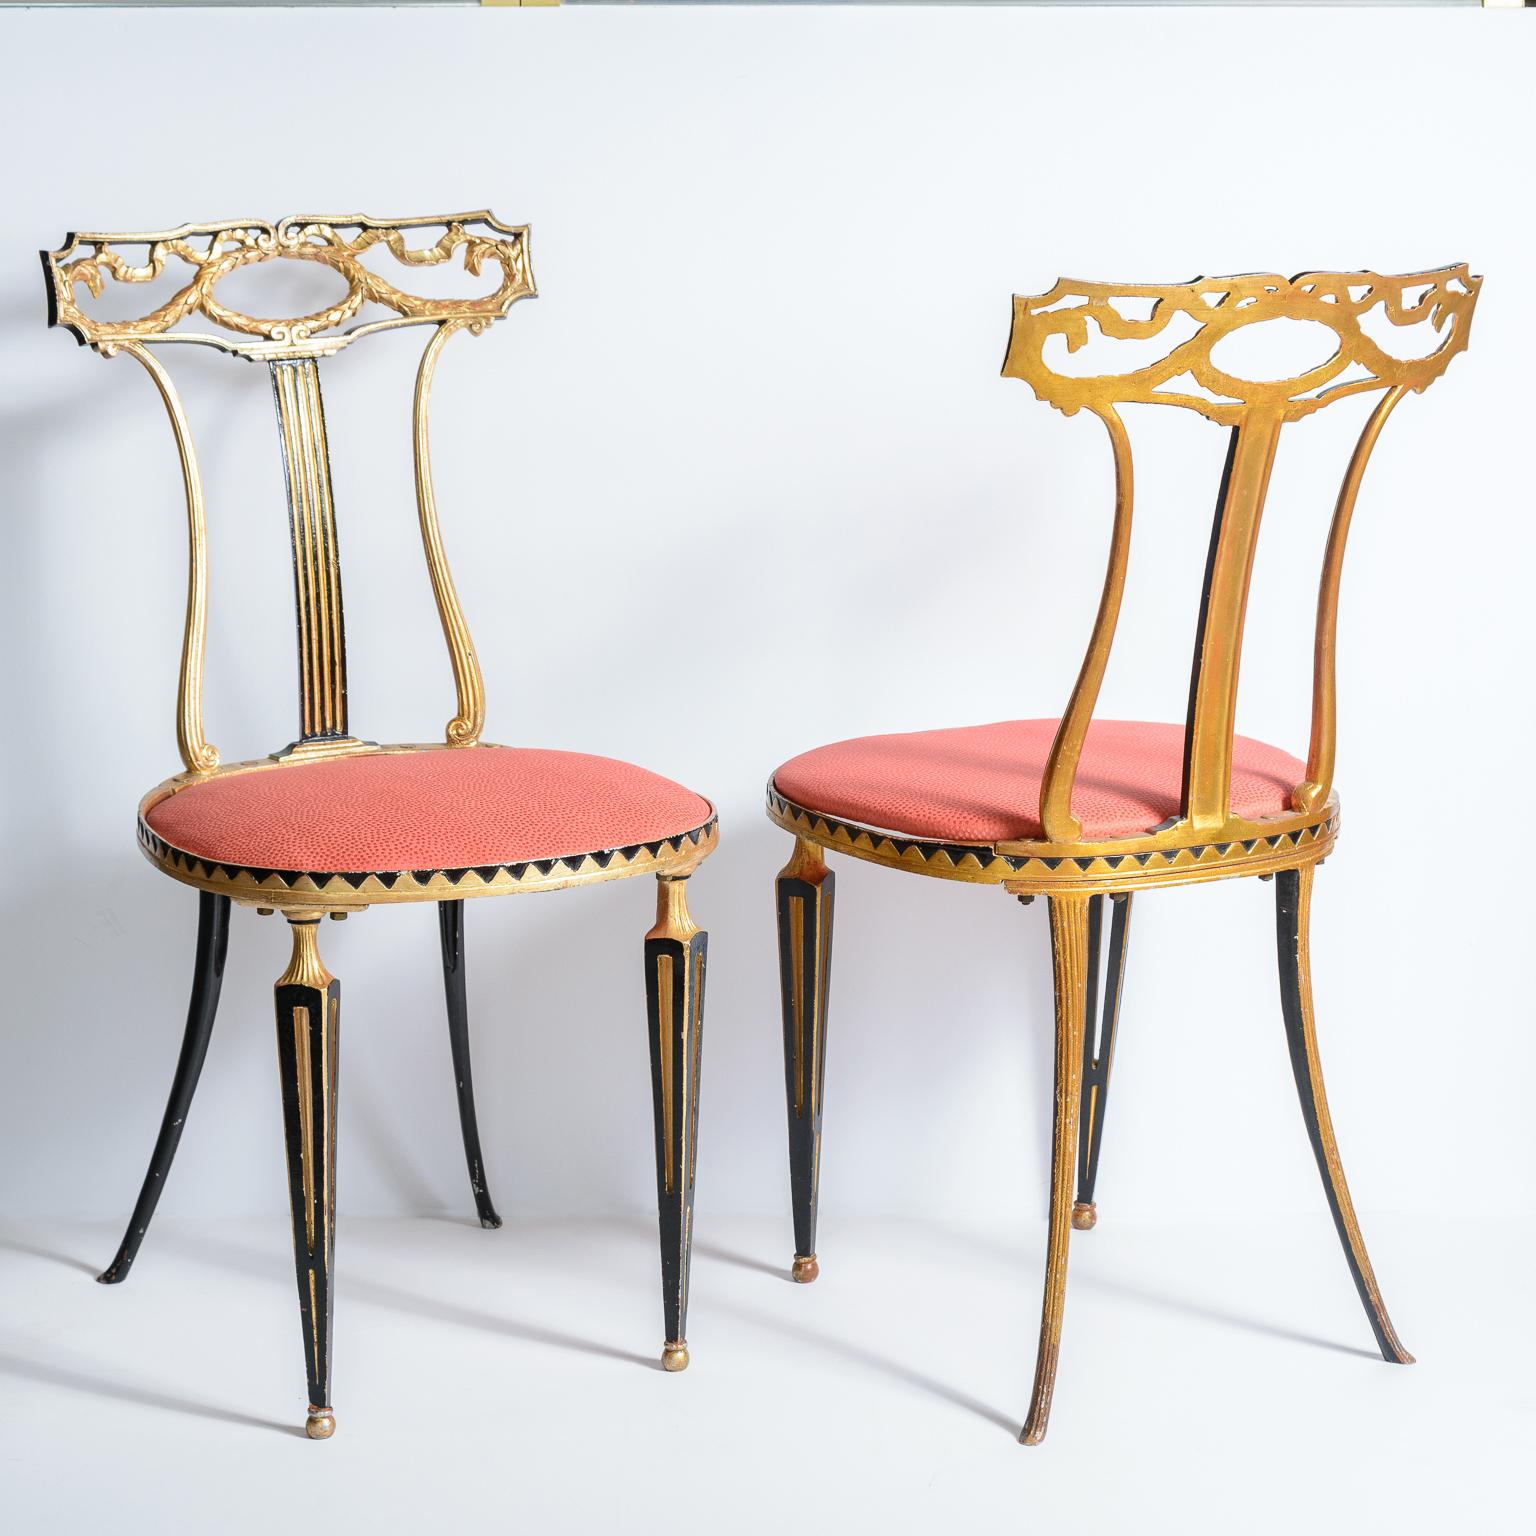 Il s'agit d'une magnifique paire de chaises en métal de style néoclassique italien par Palladio, C.C..
Ces chaises conviendraient parfaitement à de nombreux endroits de votre maison.
 Nouvellement tapissée .
Très bon état vintage, usure mineure de